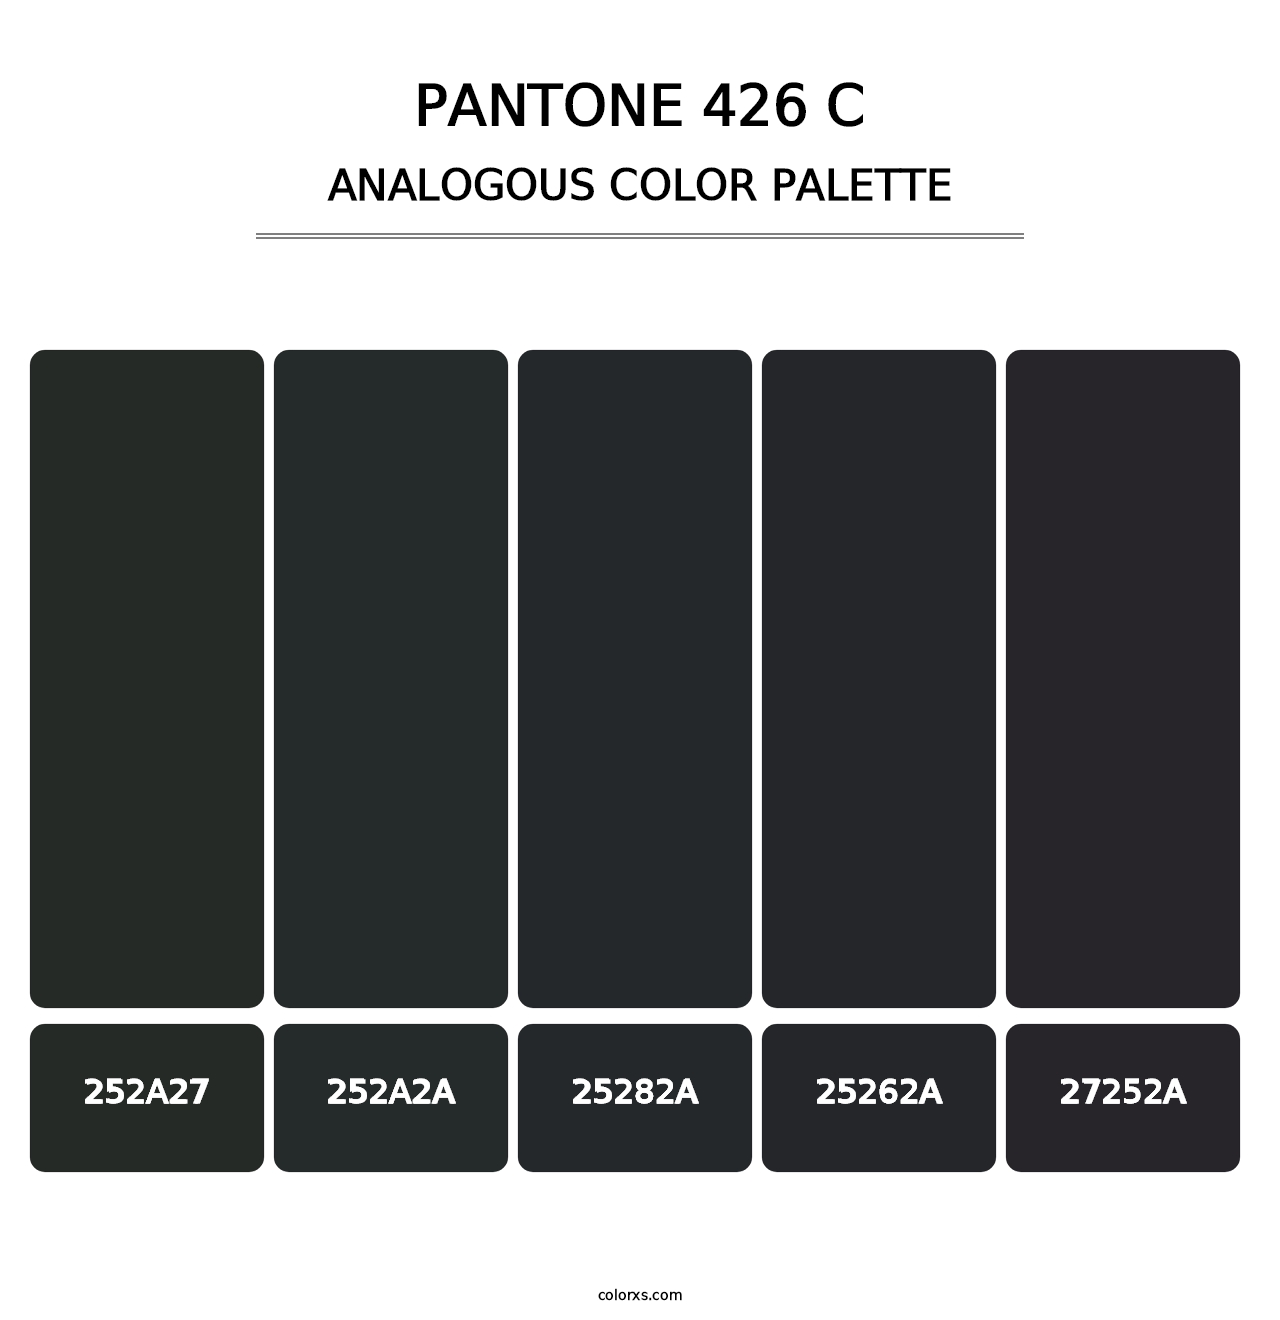 PANTONE 426 C - Analogous Color Palette